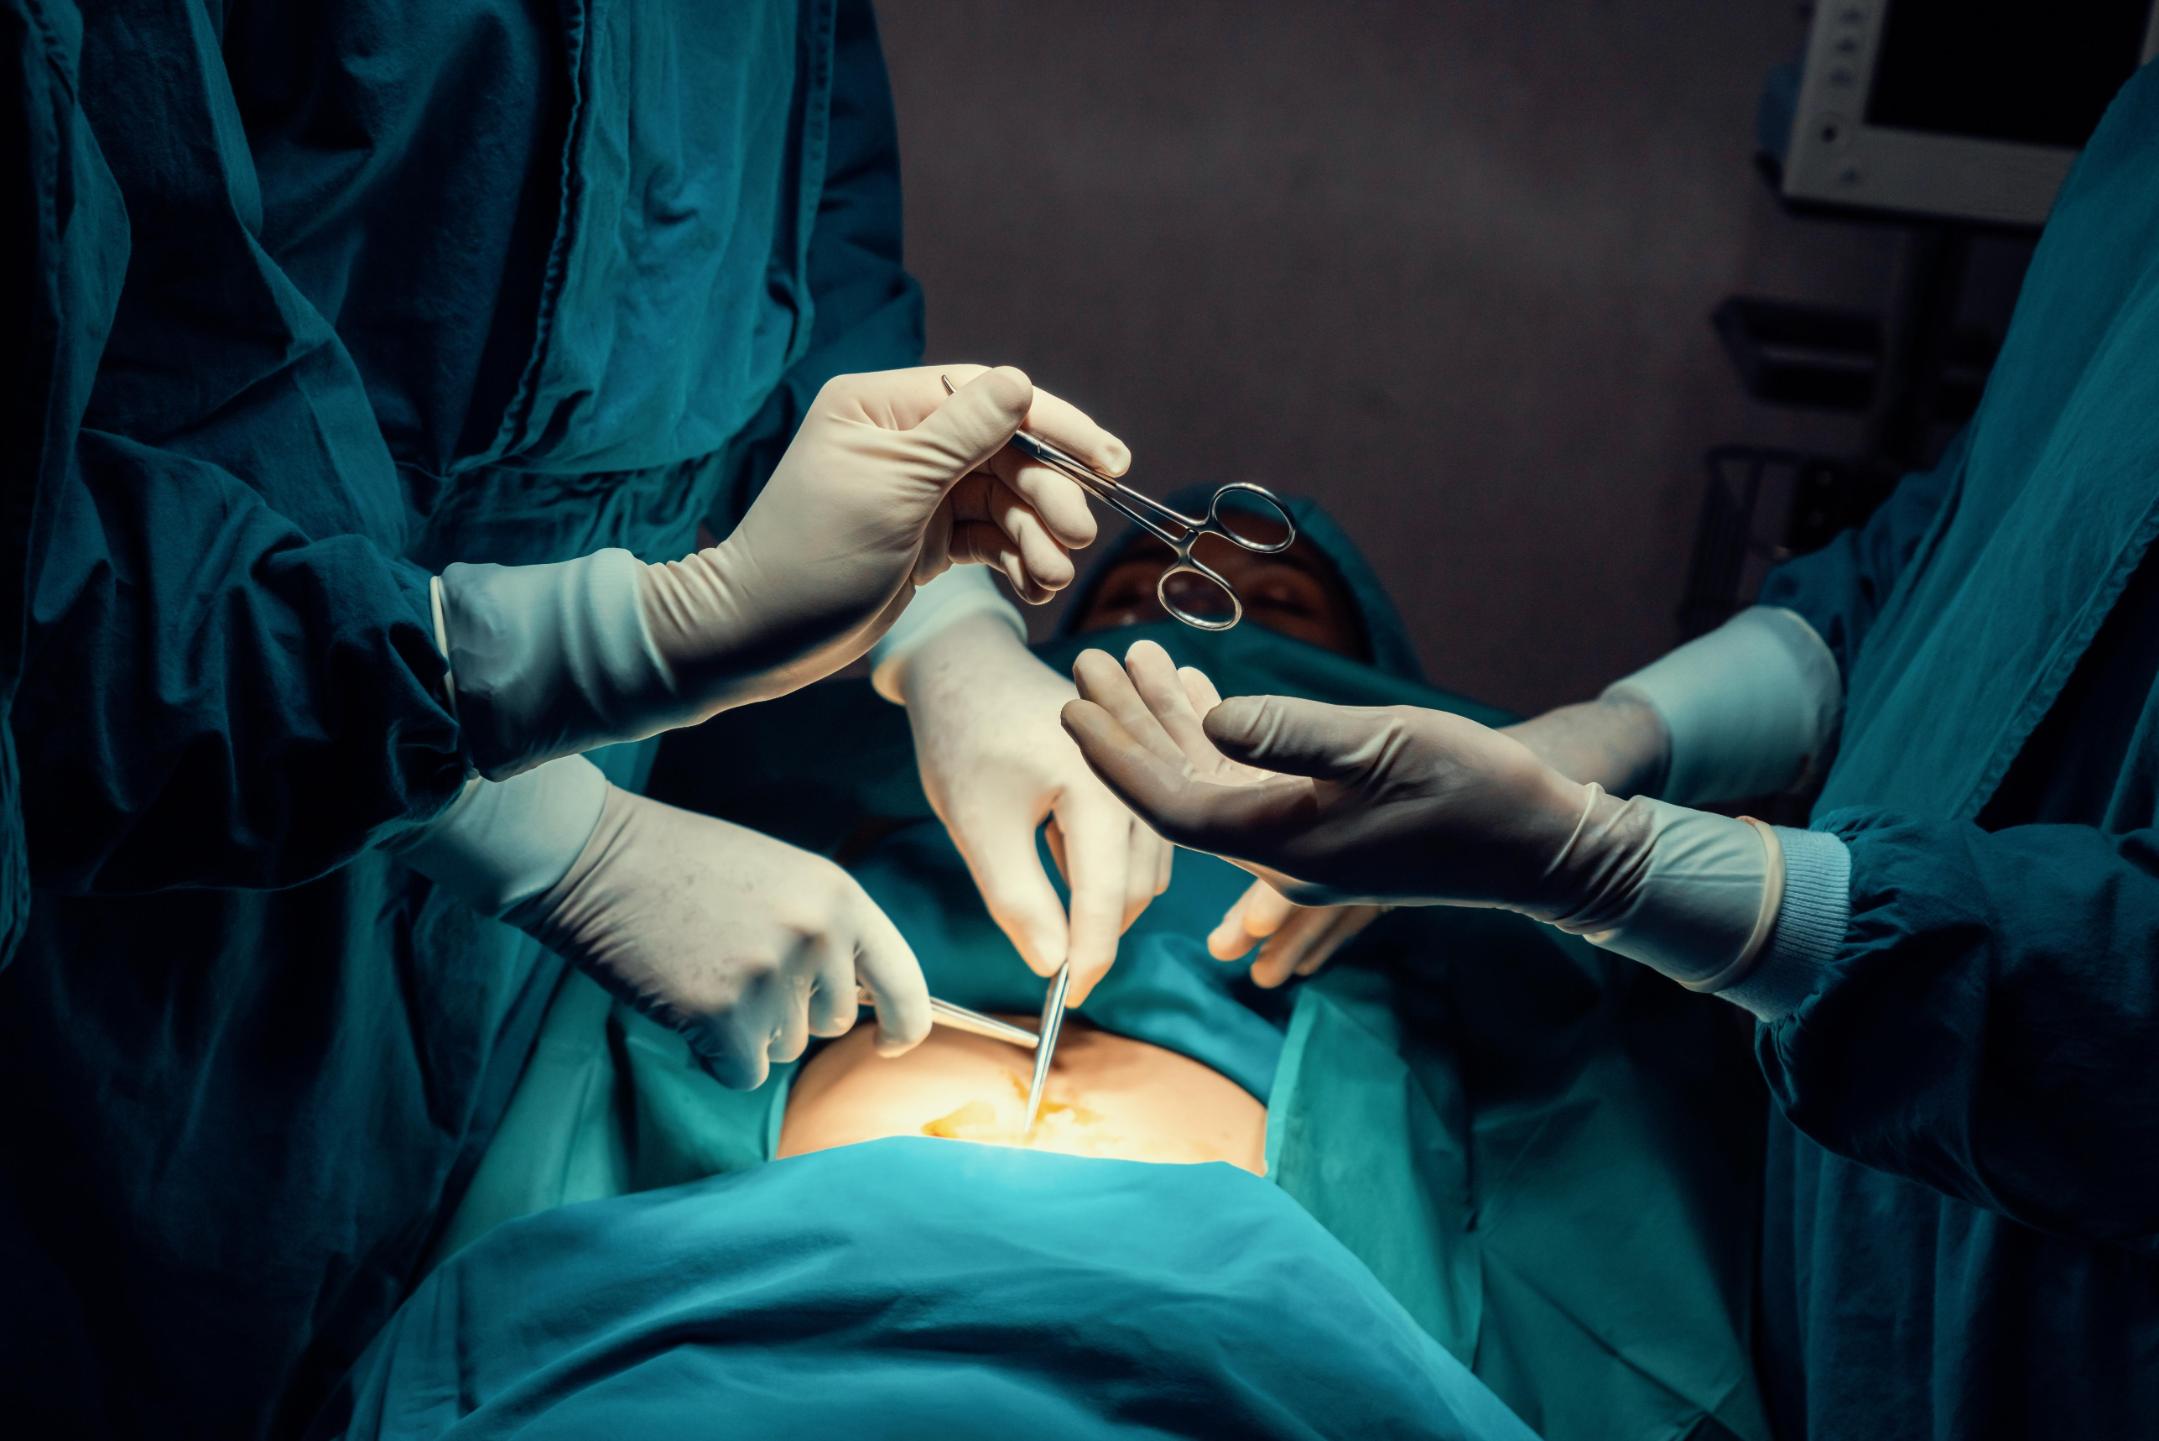 Cuáles son las cirugías estéticas más populares en el mundo? - CNN